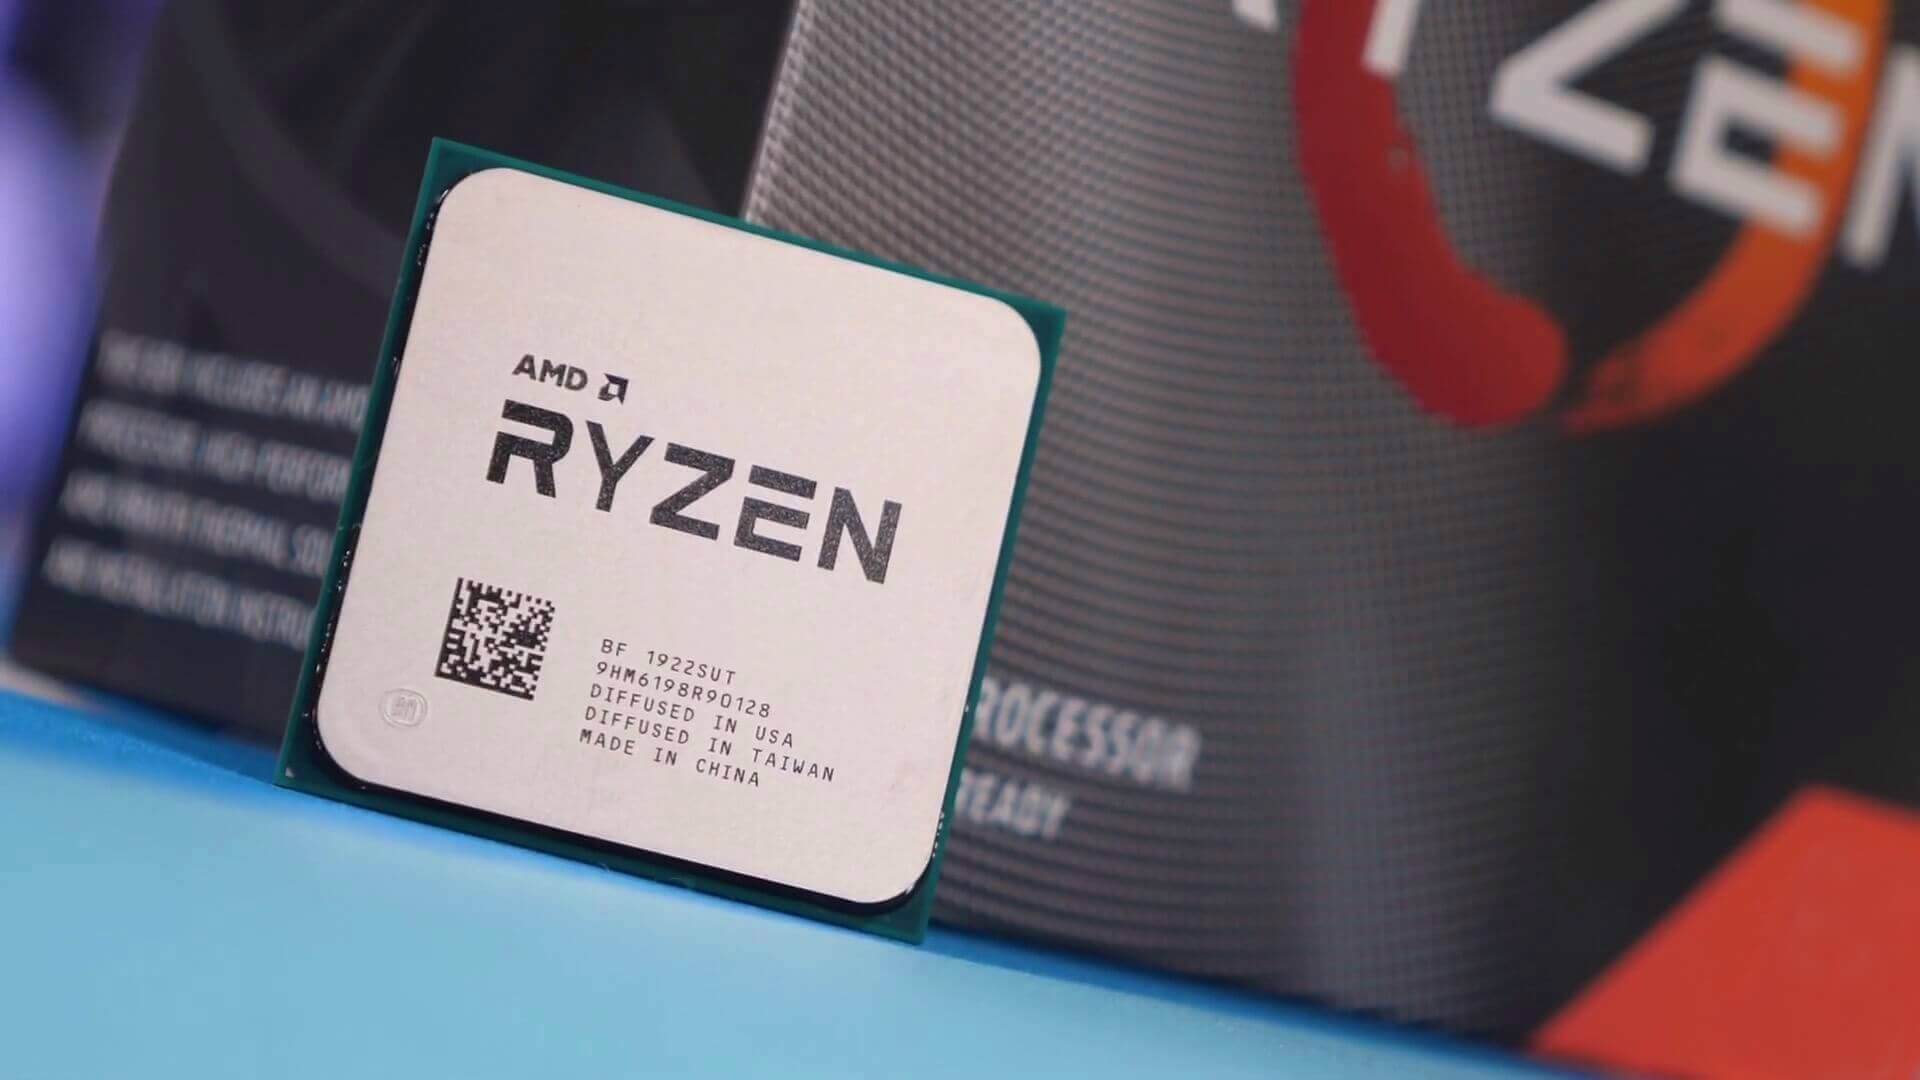 AMD's new Ryzen 3 desktop CPUs get official, coming in May ...